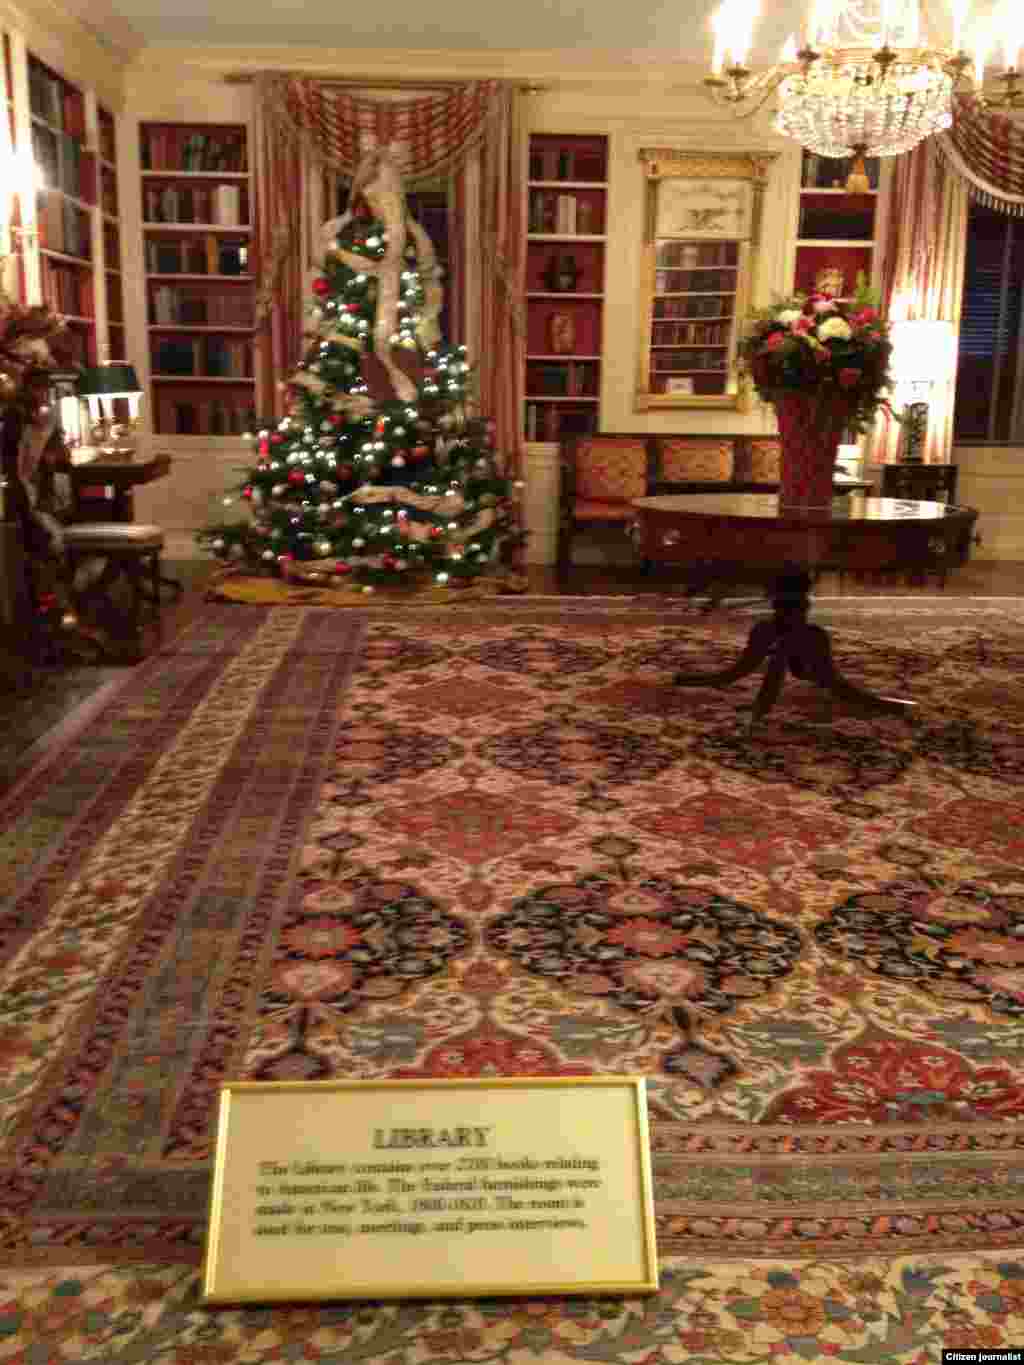 ຫ້ອງສະໝຸດຂອງທໍານຽບຂາວ (White House Christmas Tour, Dec. 22, 2012)